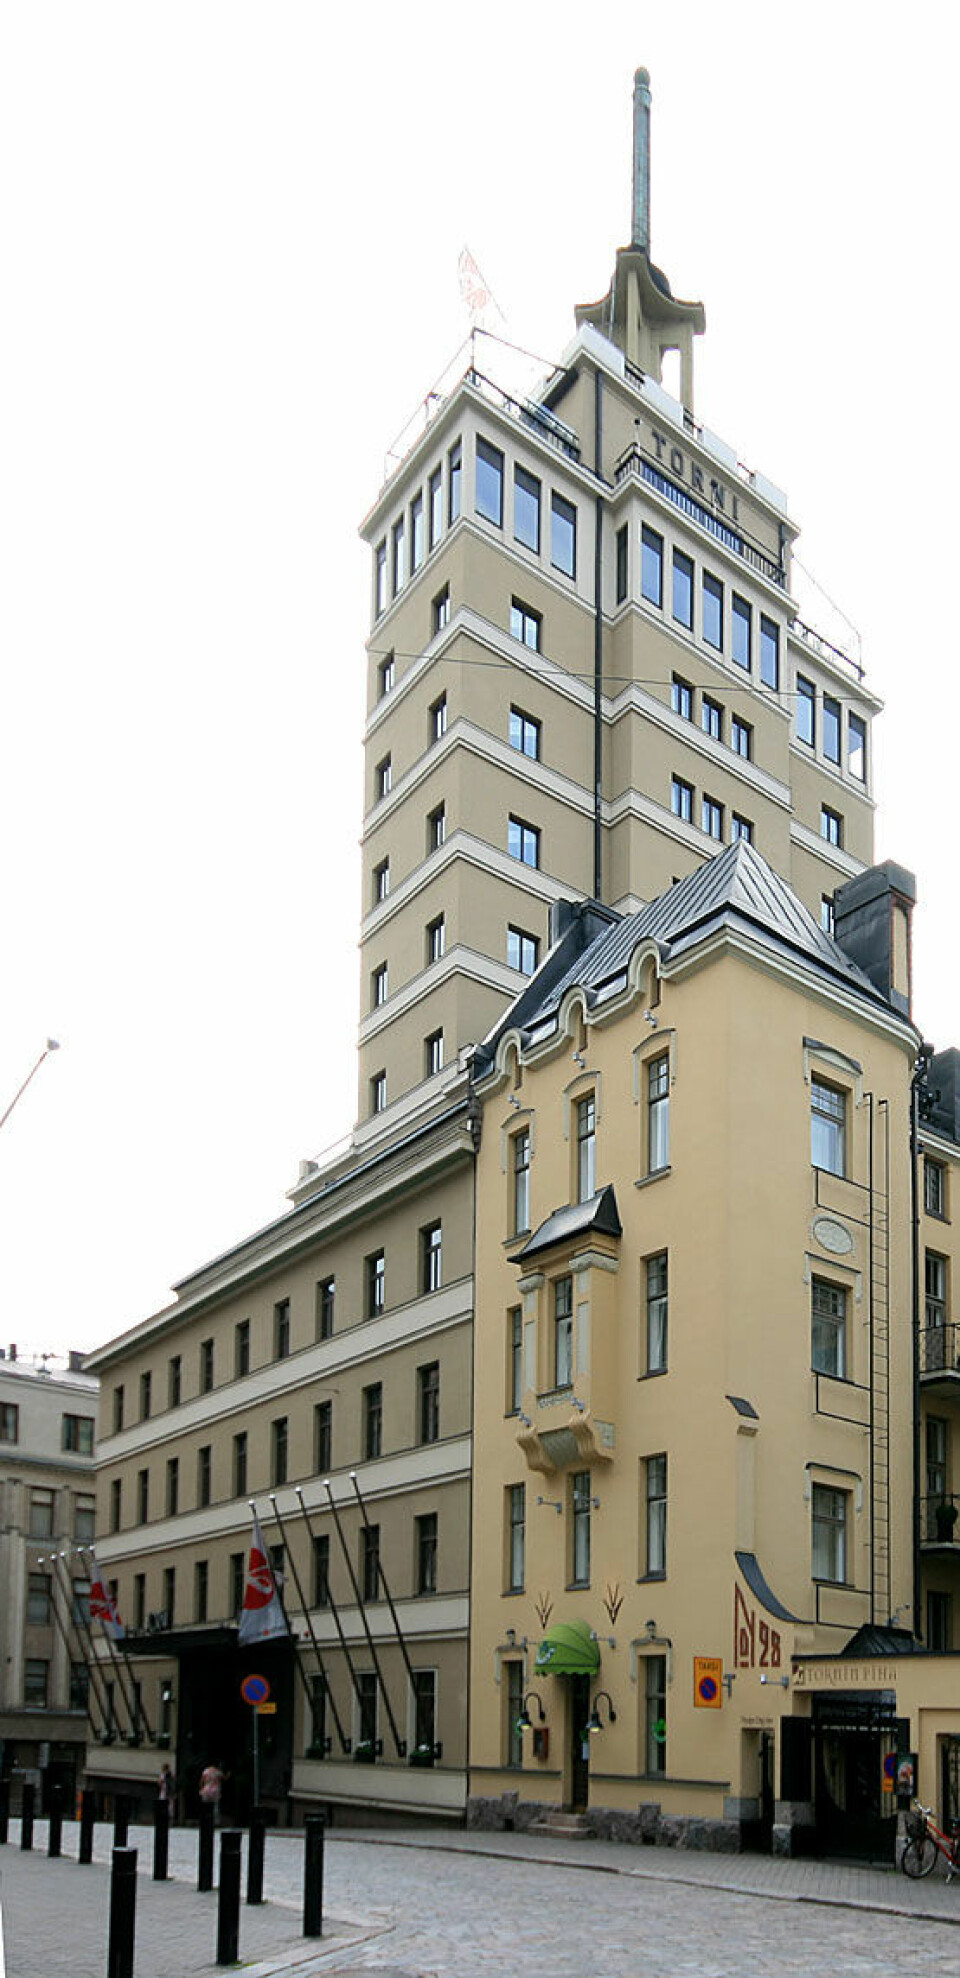 Da Hotel Torni ble bygget i 1931 var det Finlands høyeste bygg med sine 13 etasjer og 60 meter. (Foto: Mahlum/Wikimedia Commons)